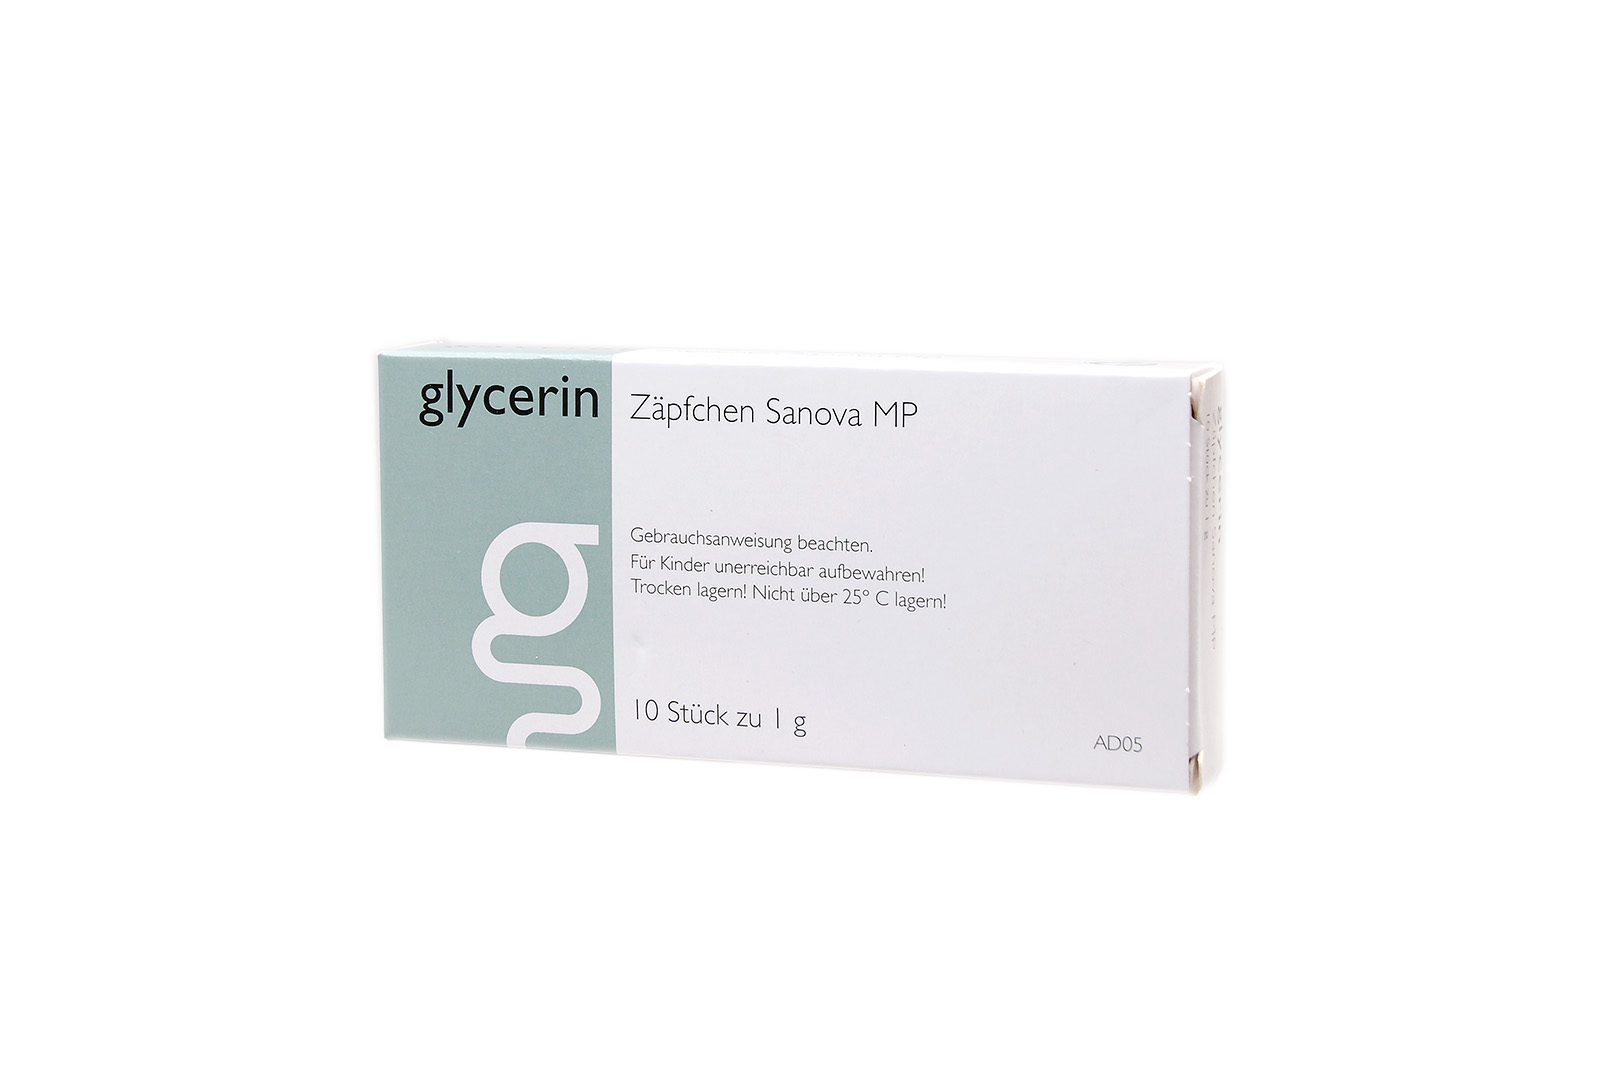 Glycerin Zäpfchen "Sanova" MP 1g